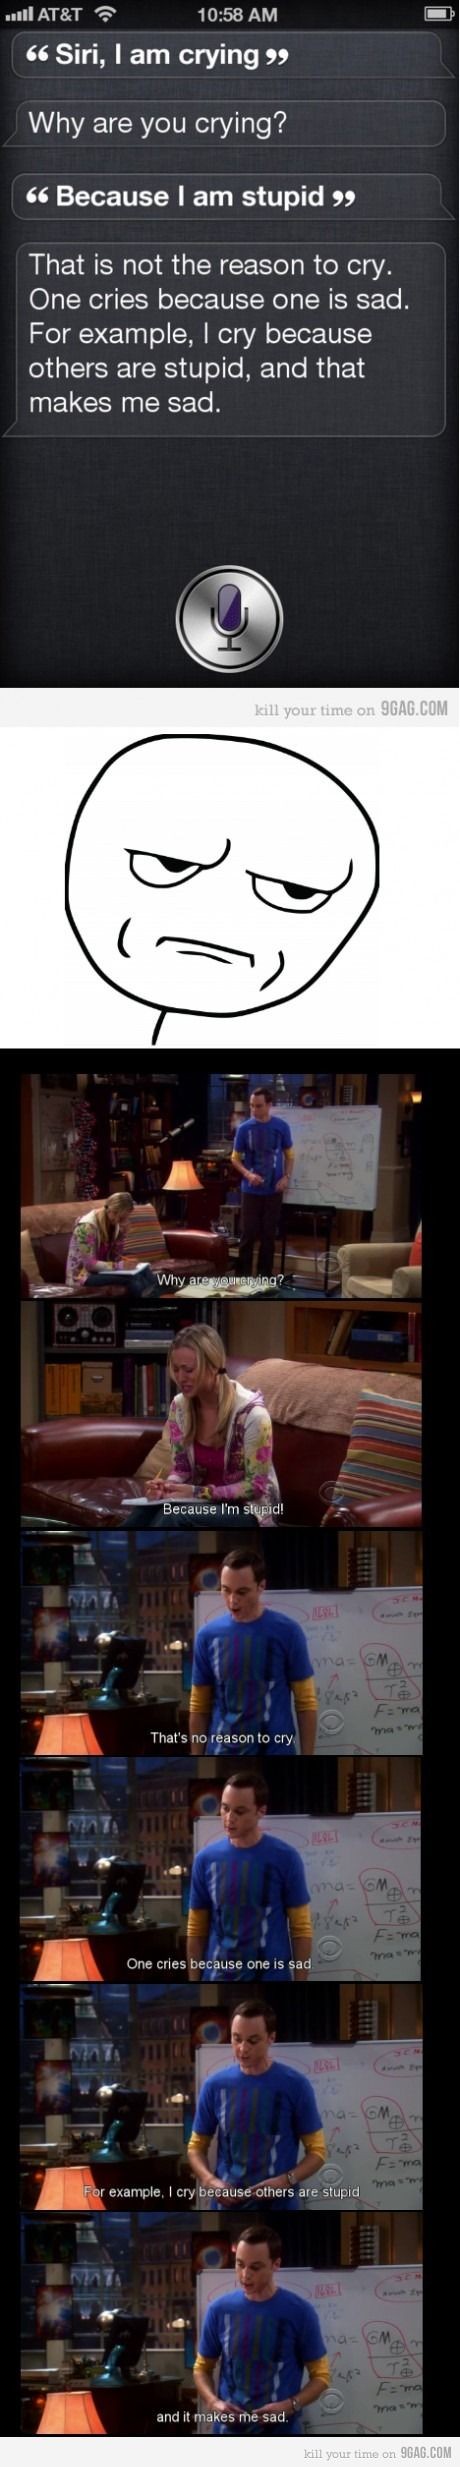 Siri watches Big Bang Theory!!!